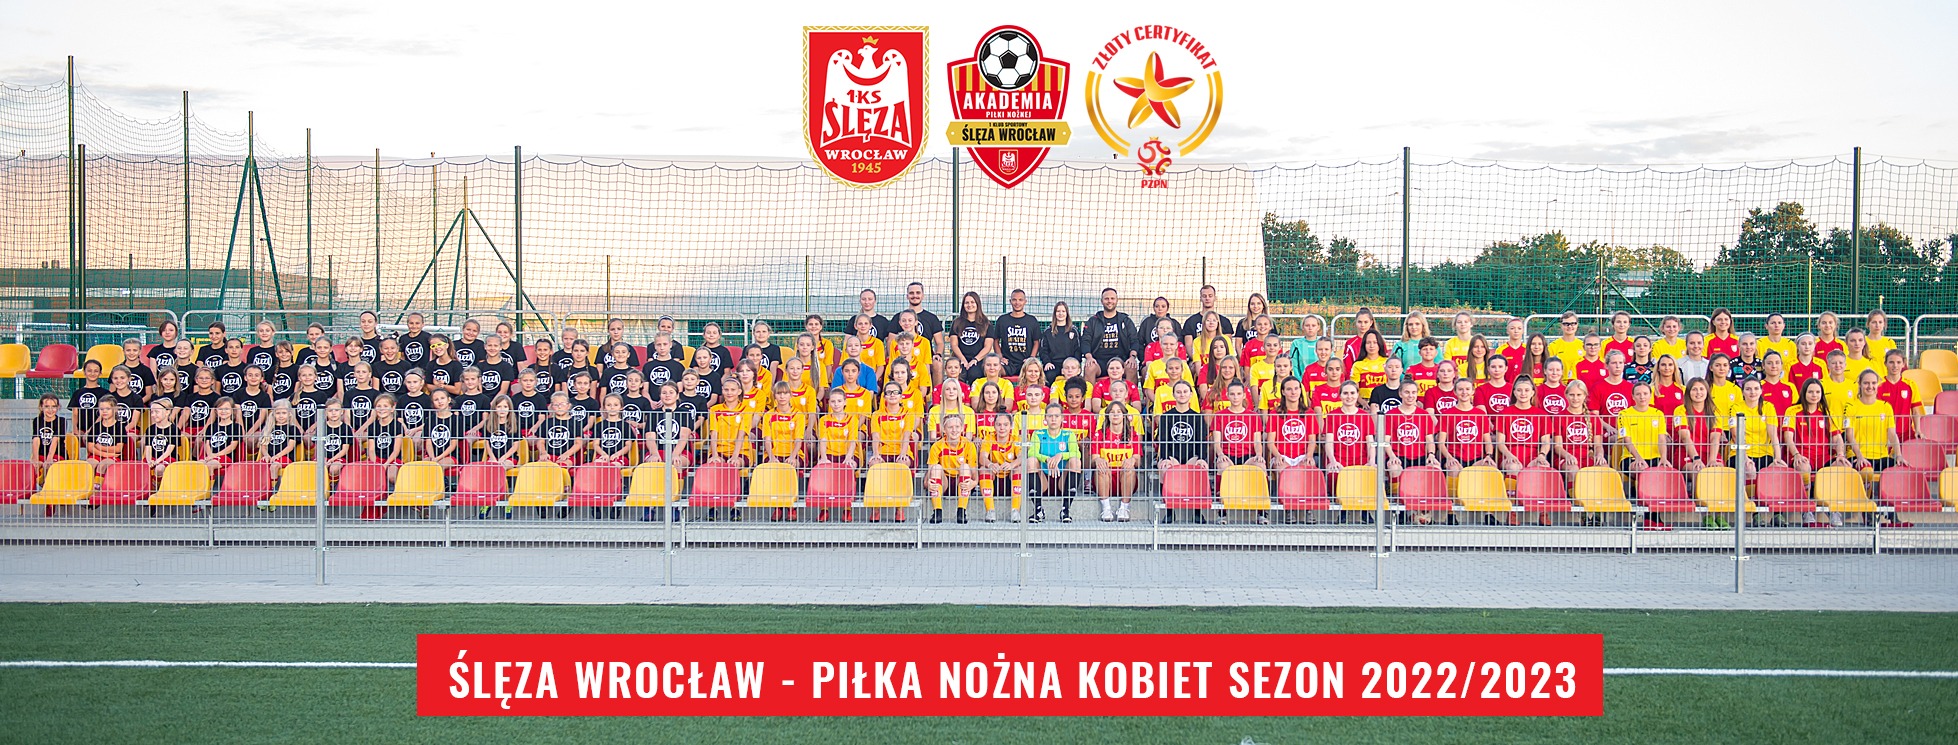 Ślęza Wrocław - piłka nożna kobiet